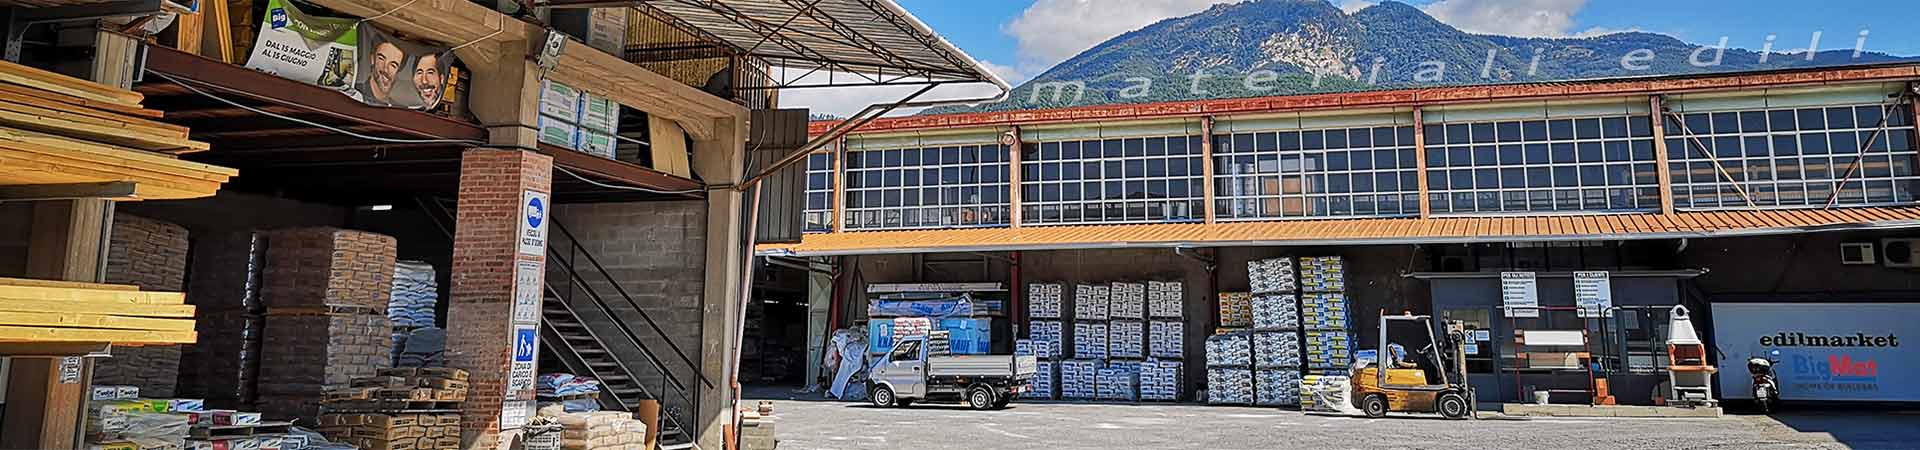 Produzione di tetti in legno, solai, e ferramenta a Massa Carrara in Toscana